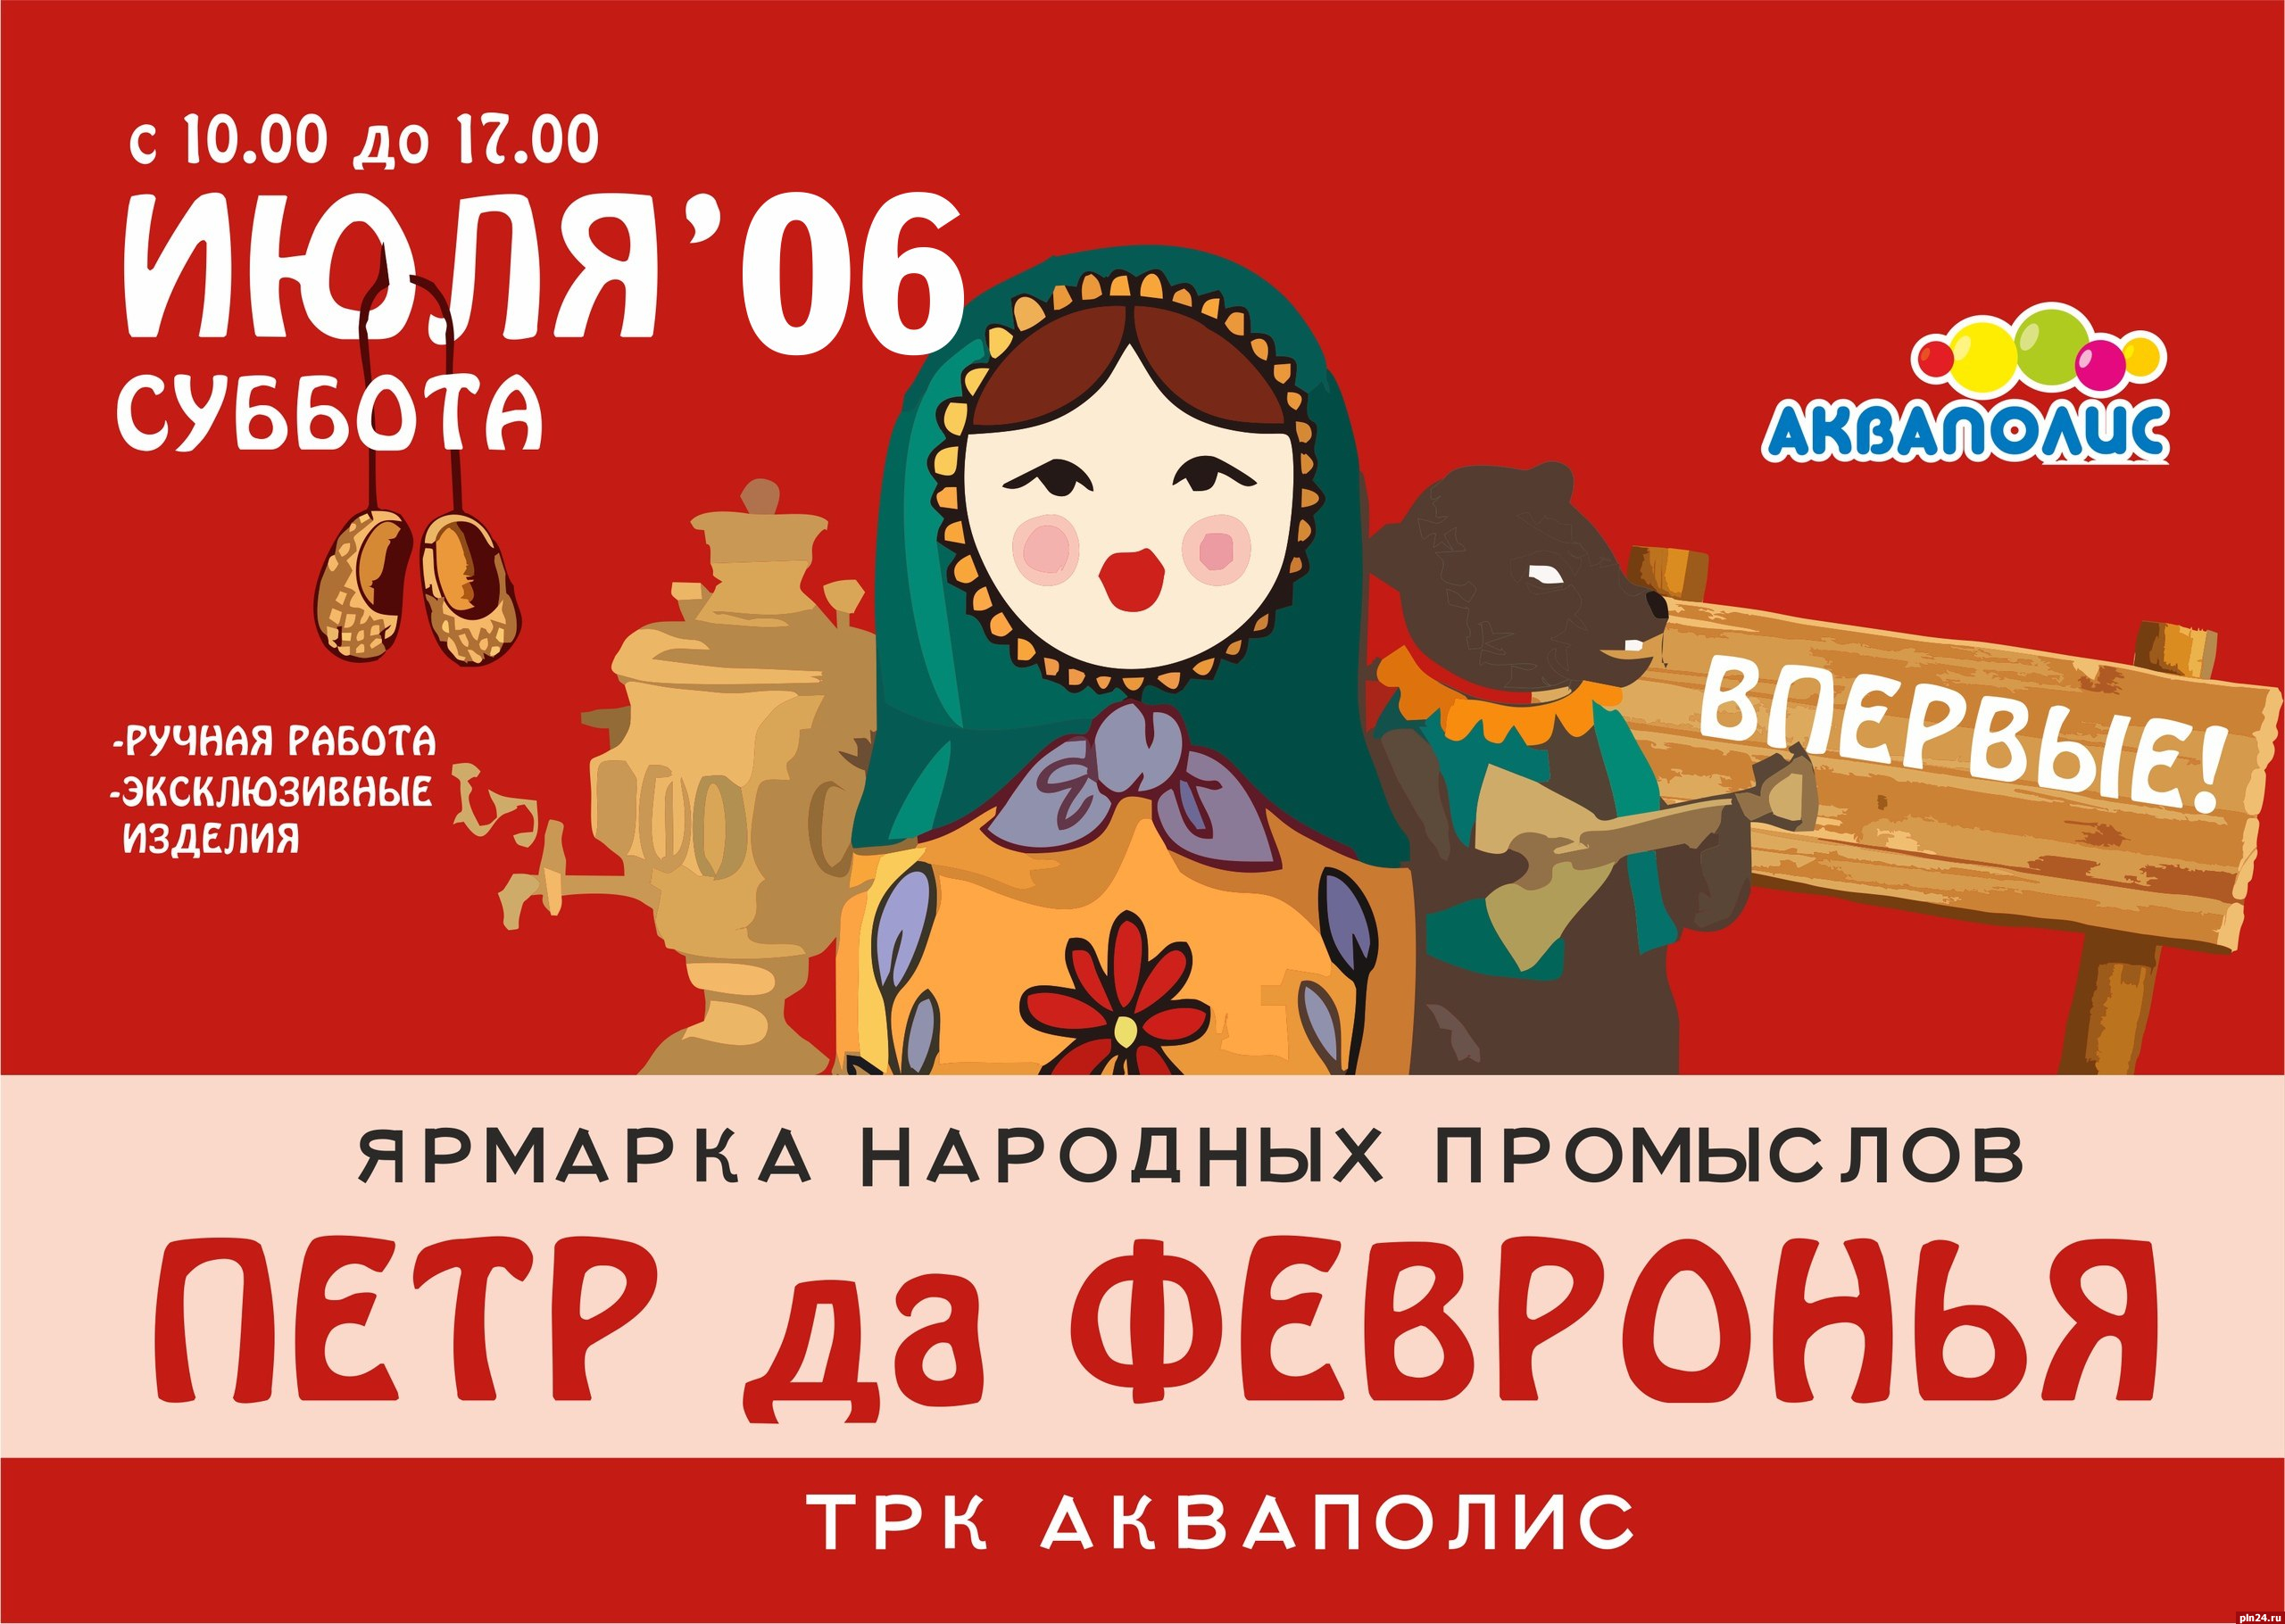 Ярмарка мастеров пройдет в торгово-развлекательном комплексе «Акваполис» в Пскове